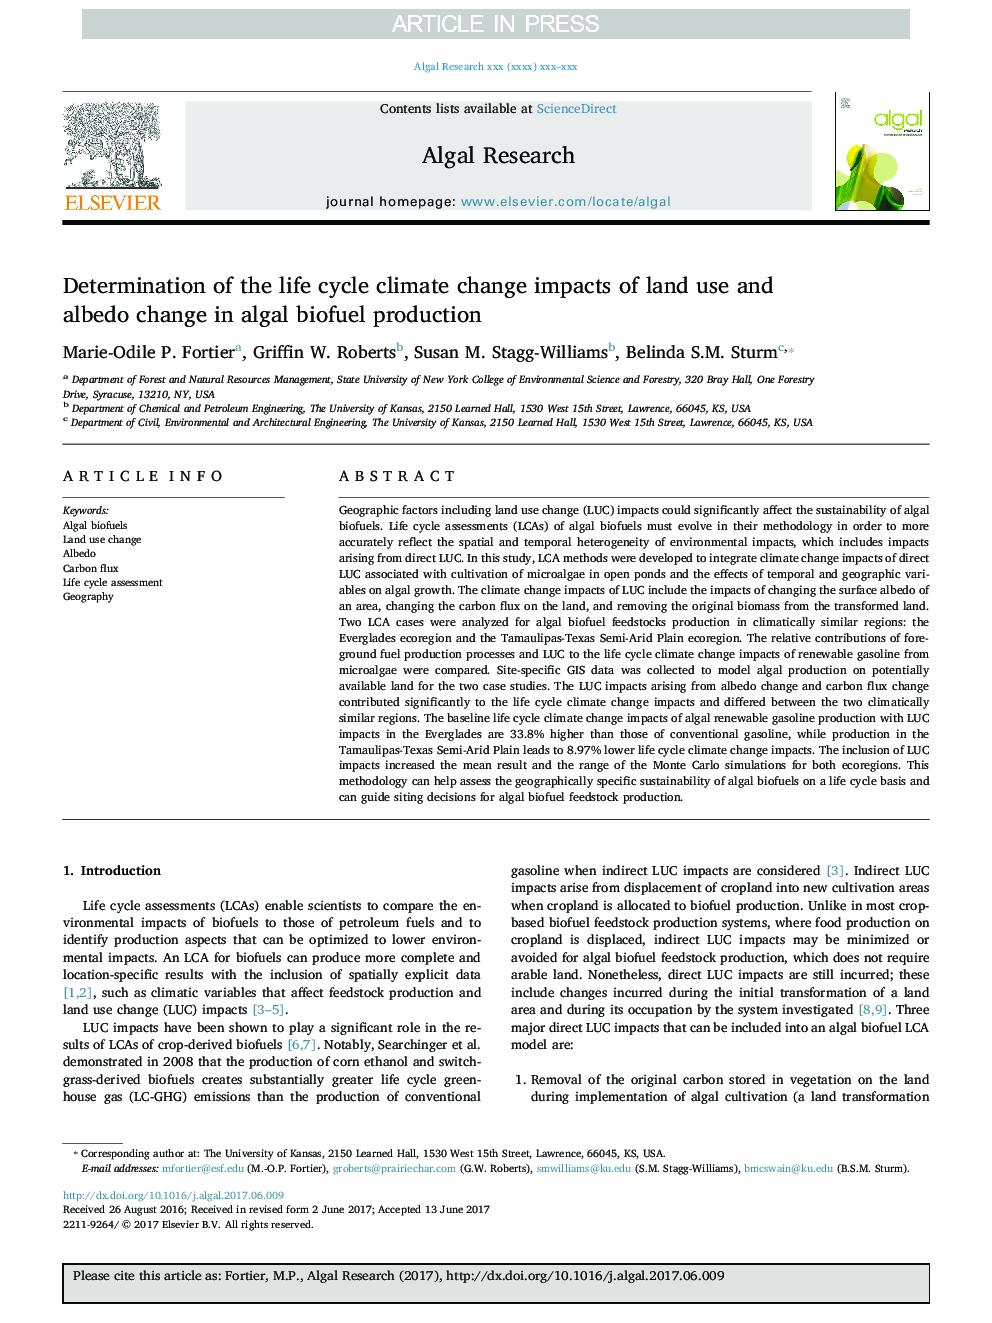 تعیین تأثیرات تغییرات آب و هوا در چرخه تغییر مصرف زمین و تغییرات آلبیدو در تولید سوخت زیست محیطی 